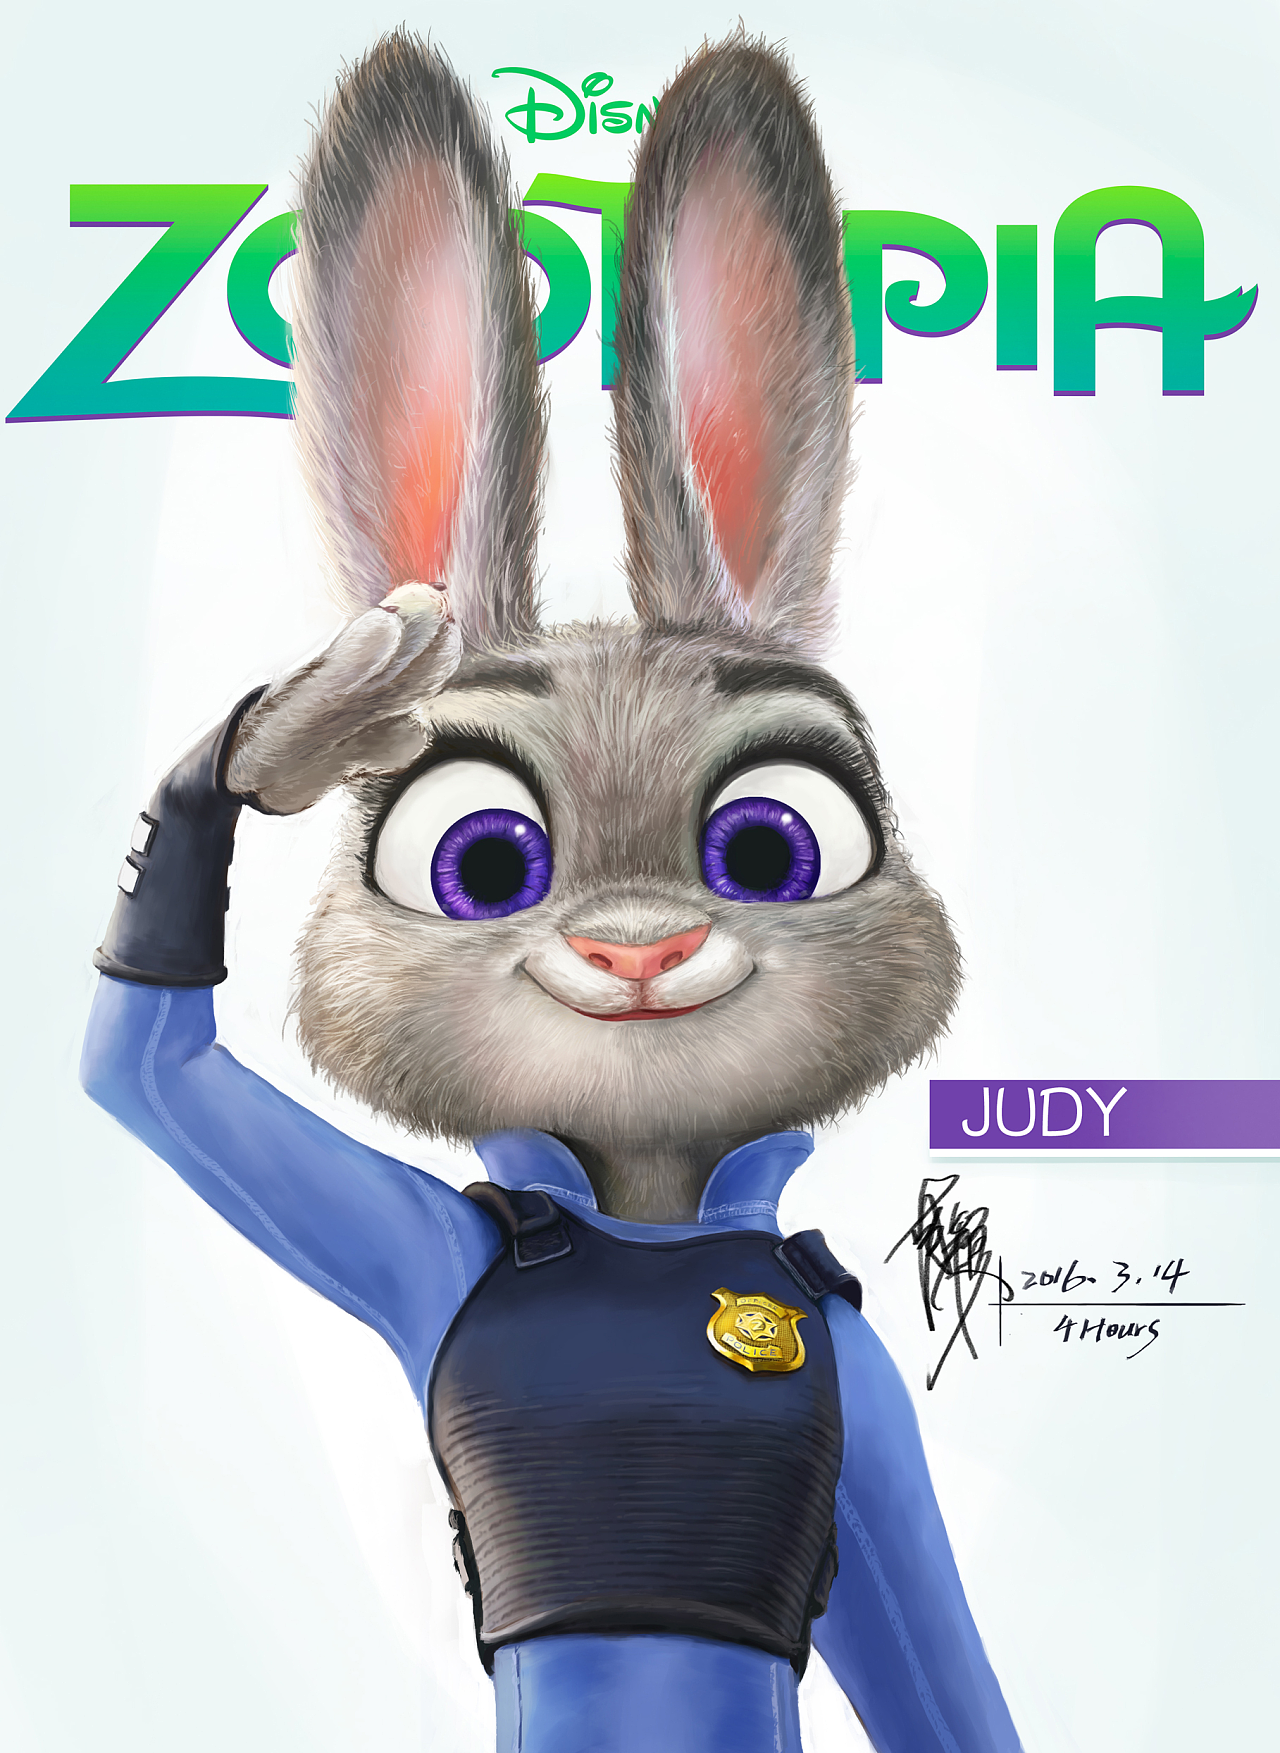 2015-3-14 疯狂动物城-兔子警官Judy【4小时练